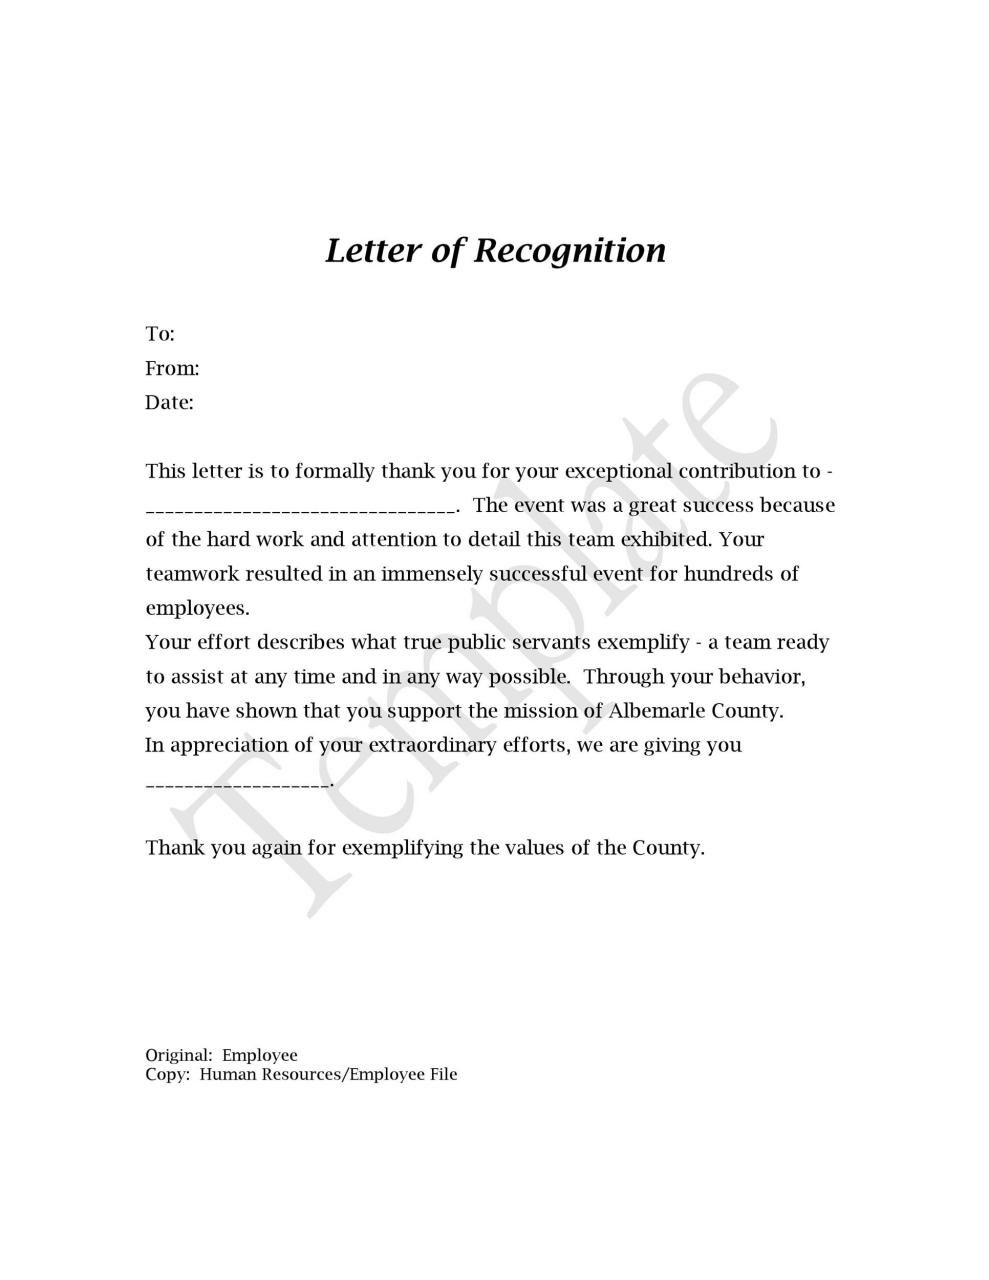 Carta de reconocimiento gratis 01